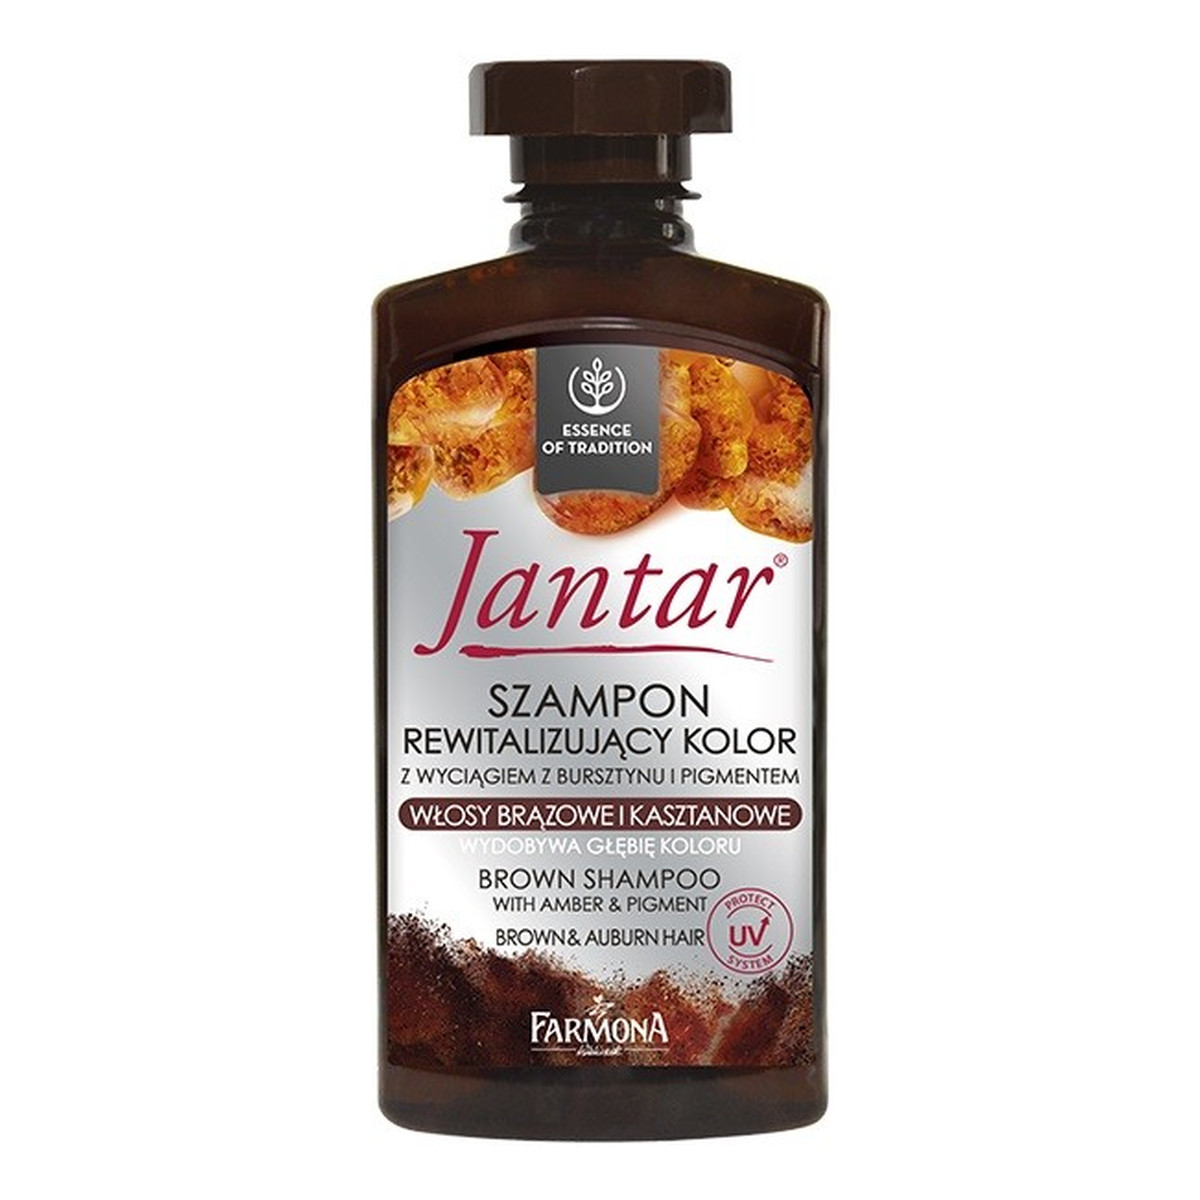 Farmona Jantar szampon rewitalizujacy kolor, włosy brązowe i kasztanowe 330ml